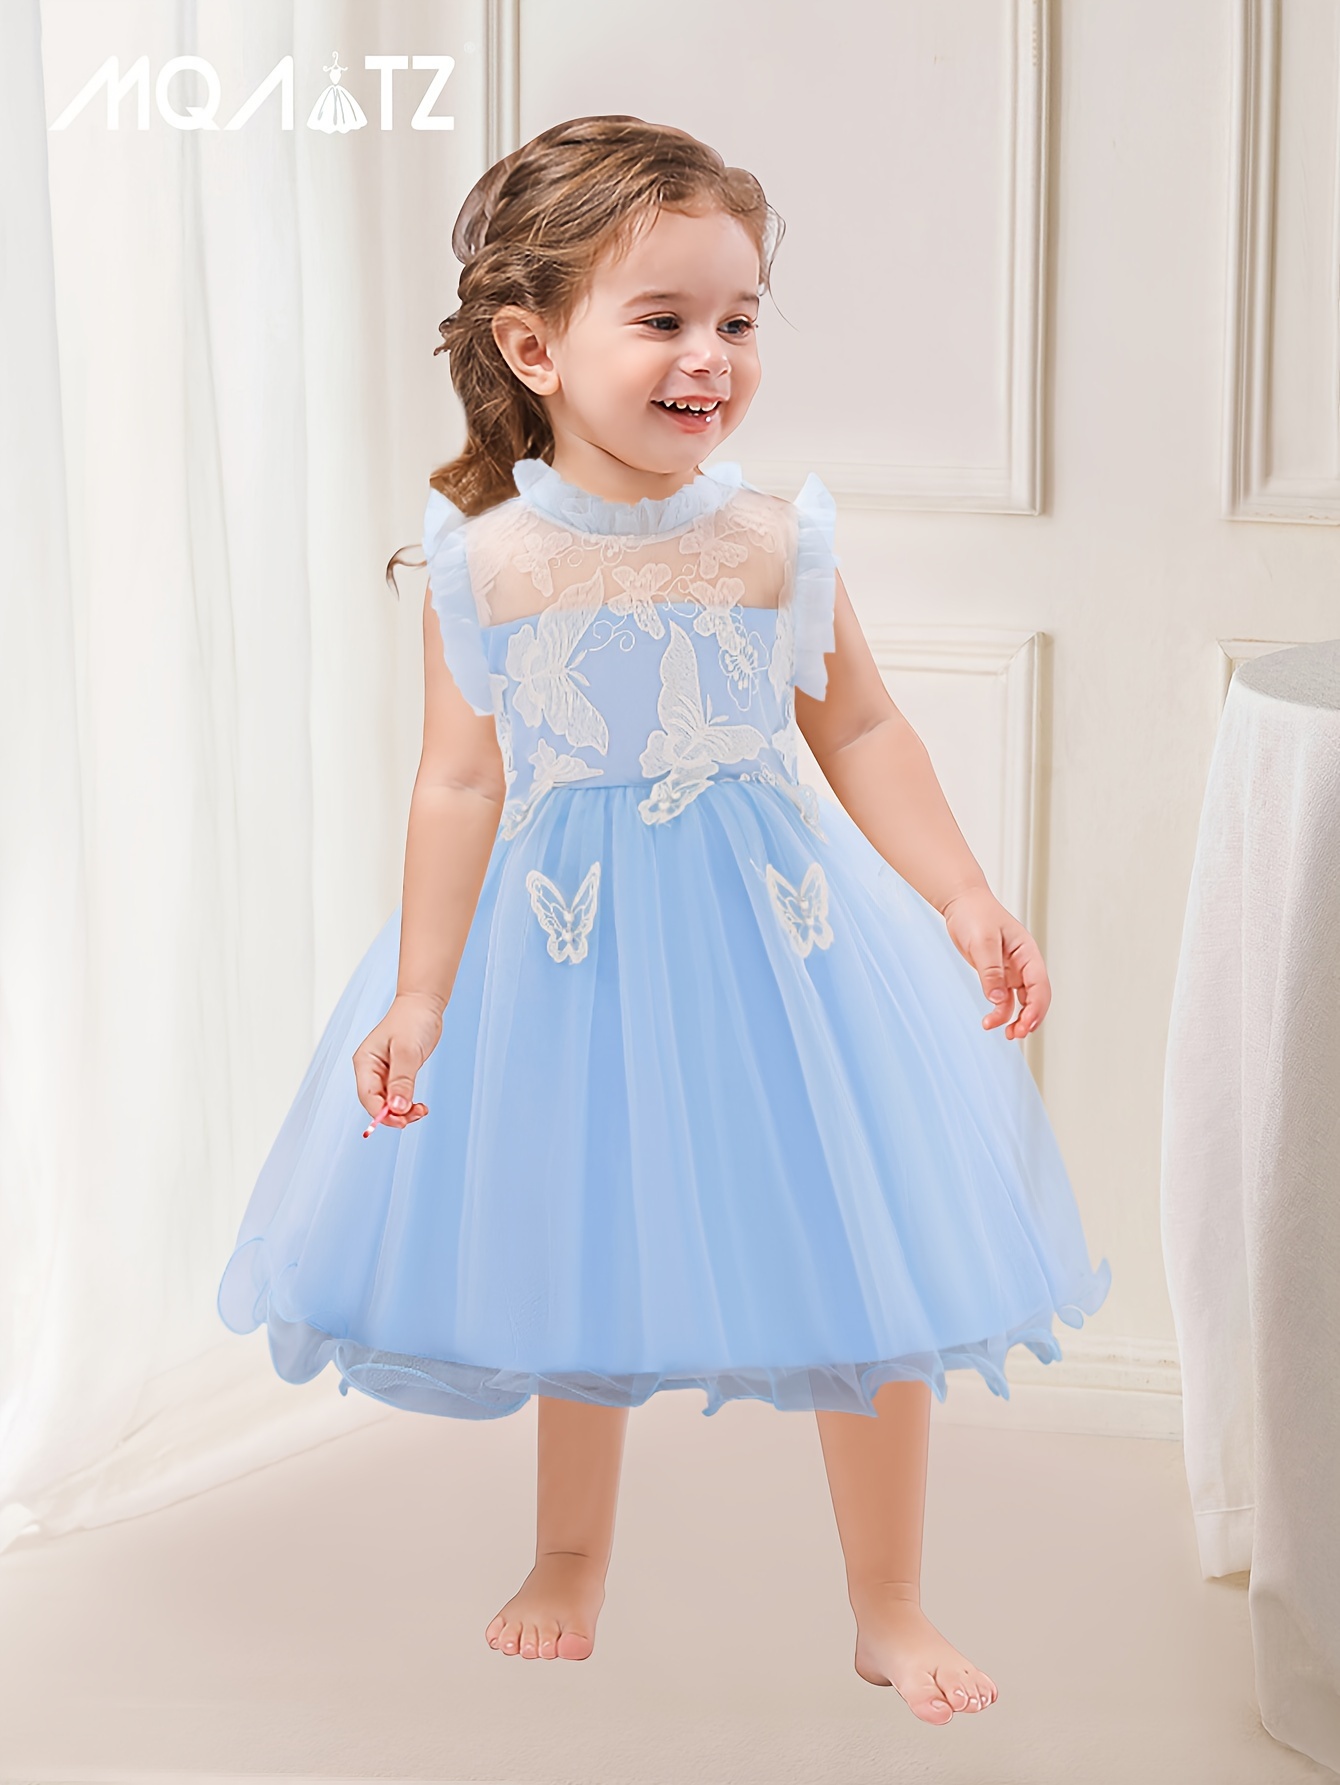 Vestido Ballet Niñas - Vestido niña, vestido fiesta, bautizo, ropa infantil